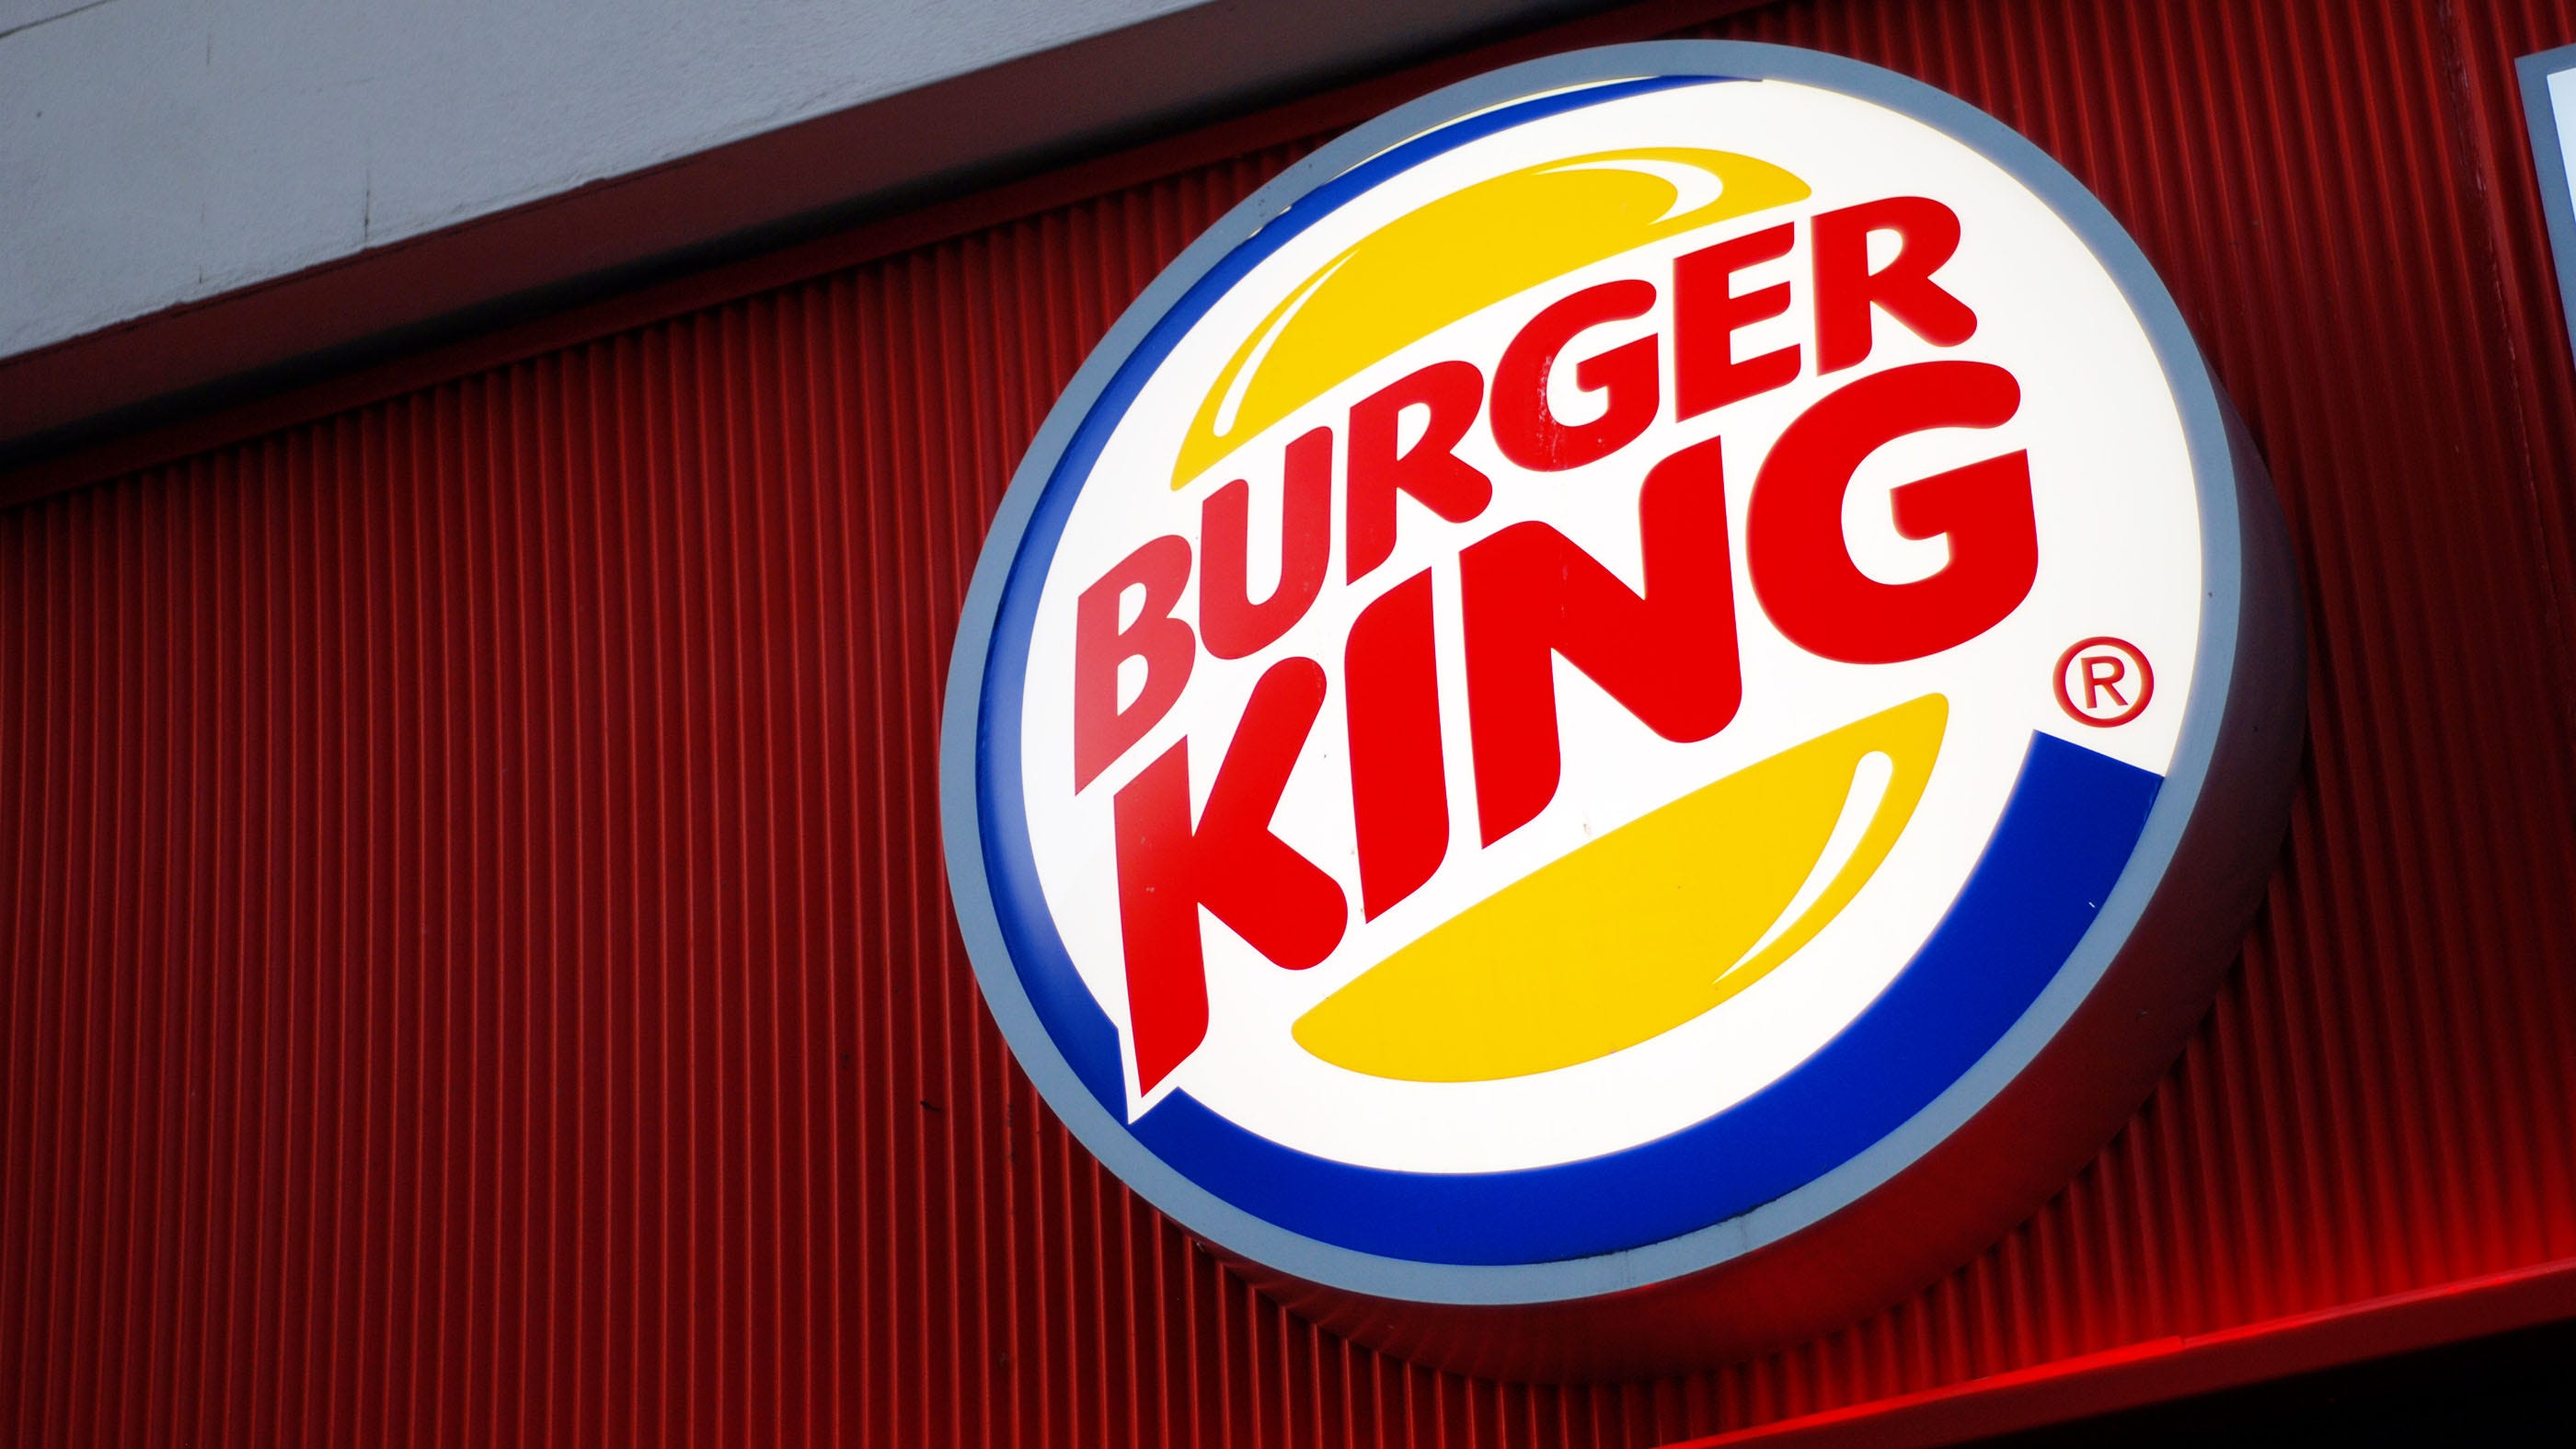 burger king logos